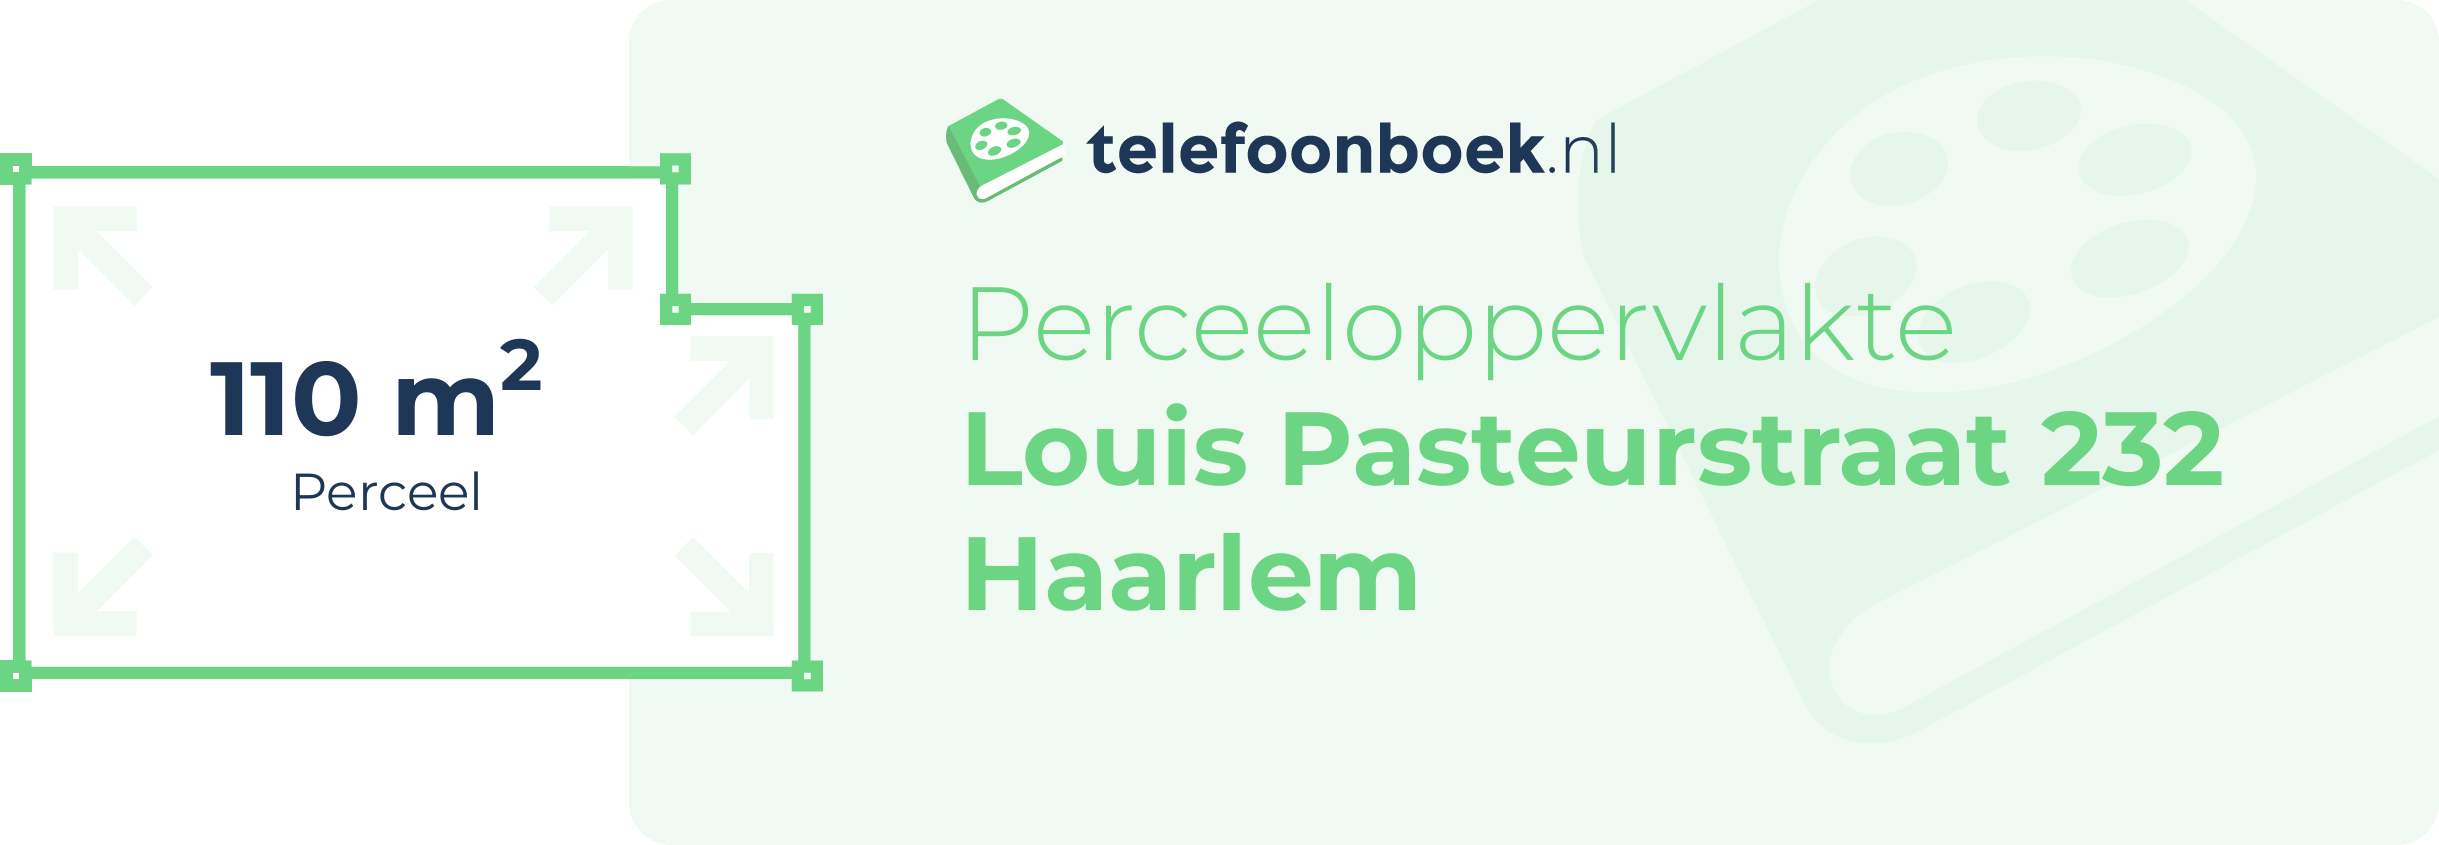 Perceeloppervlakte Louis Pasteurstraat 232 Haarlem